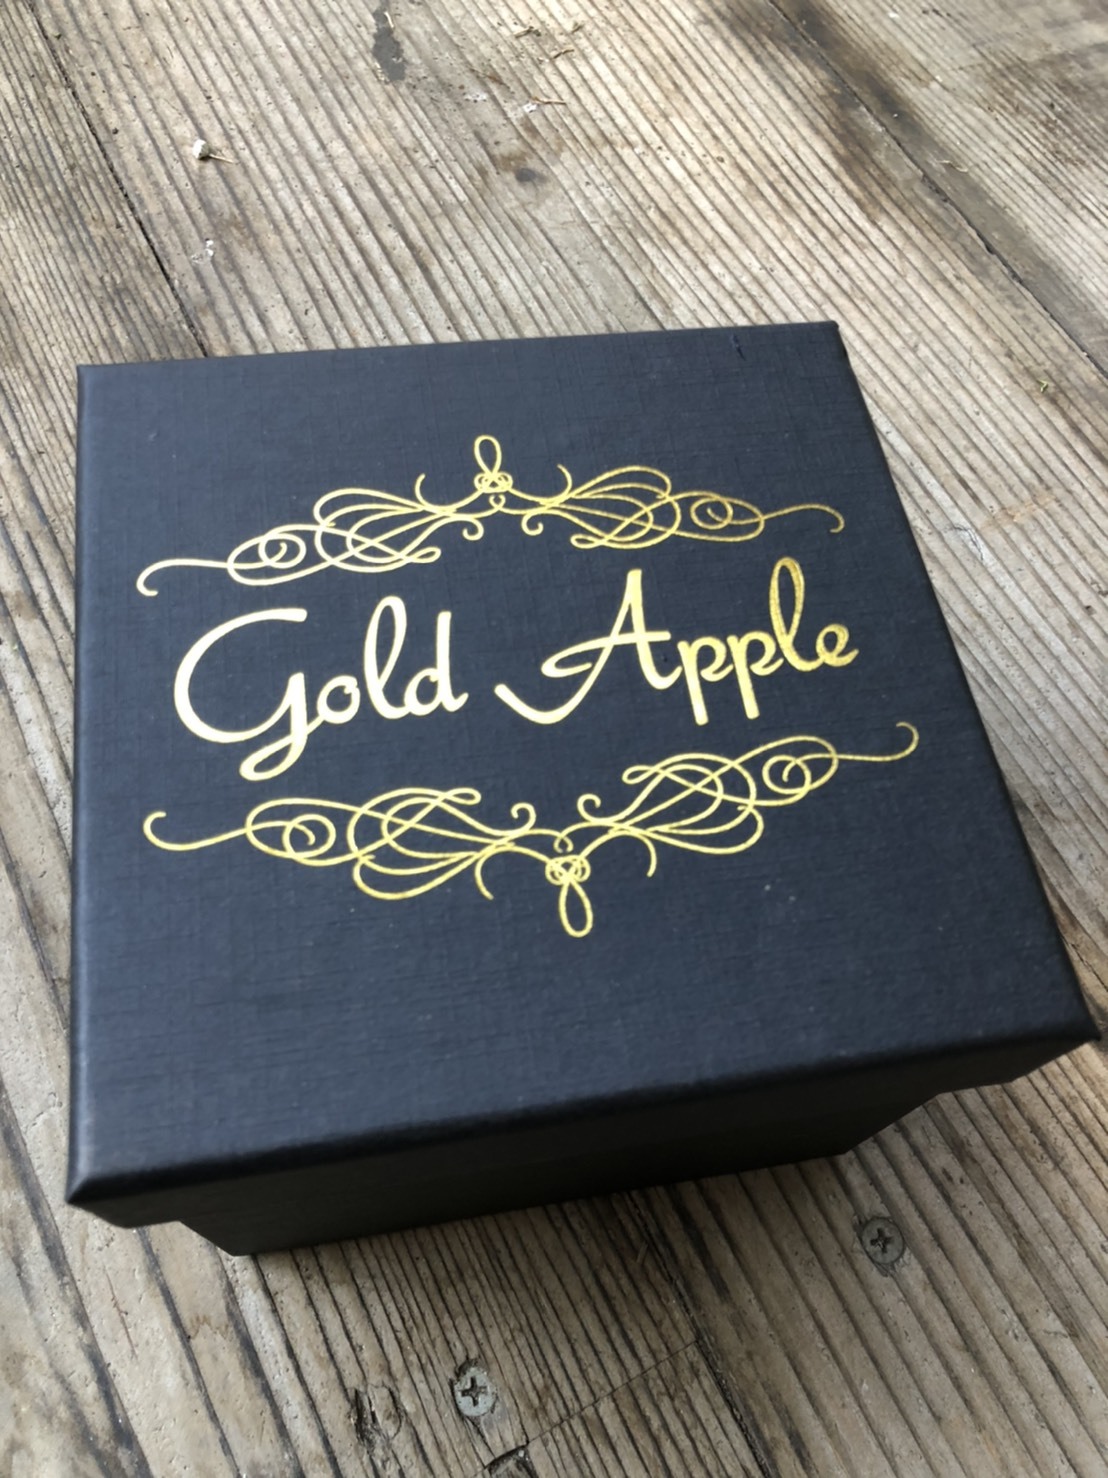 【金のりんご】ゴールドアップル - Gold Apple【金運UP・長寿祈願】 | フラワーギフトのオンラインショップ | 花と猫と私